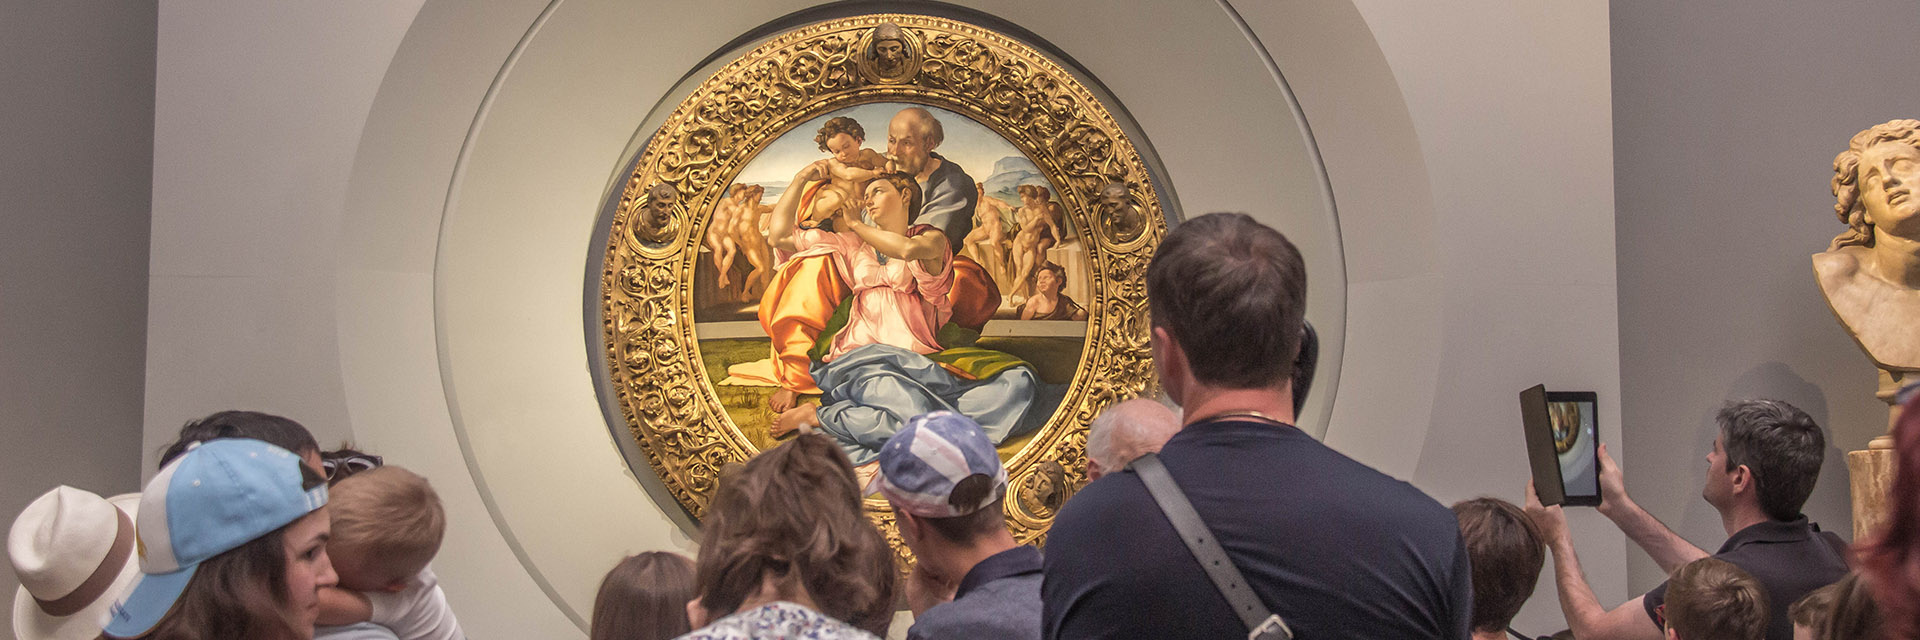 Como visitar a Galeria Uffizi e a Accademia sem fila